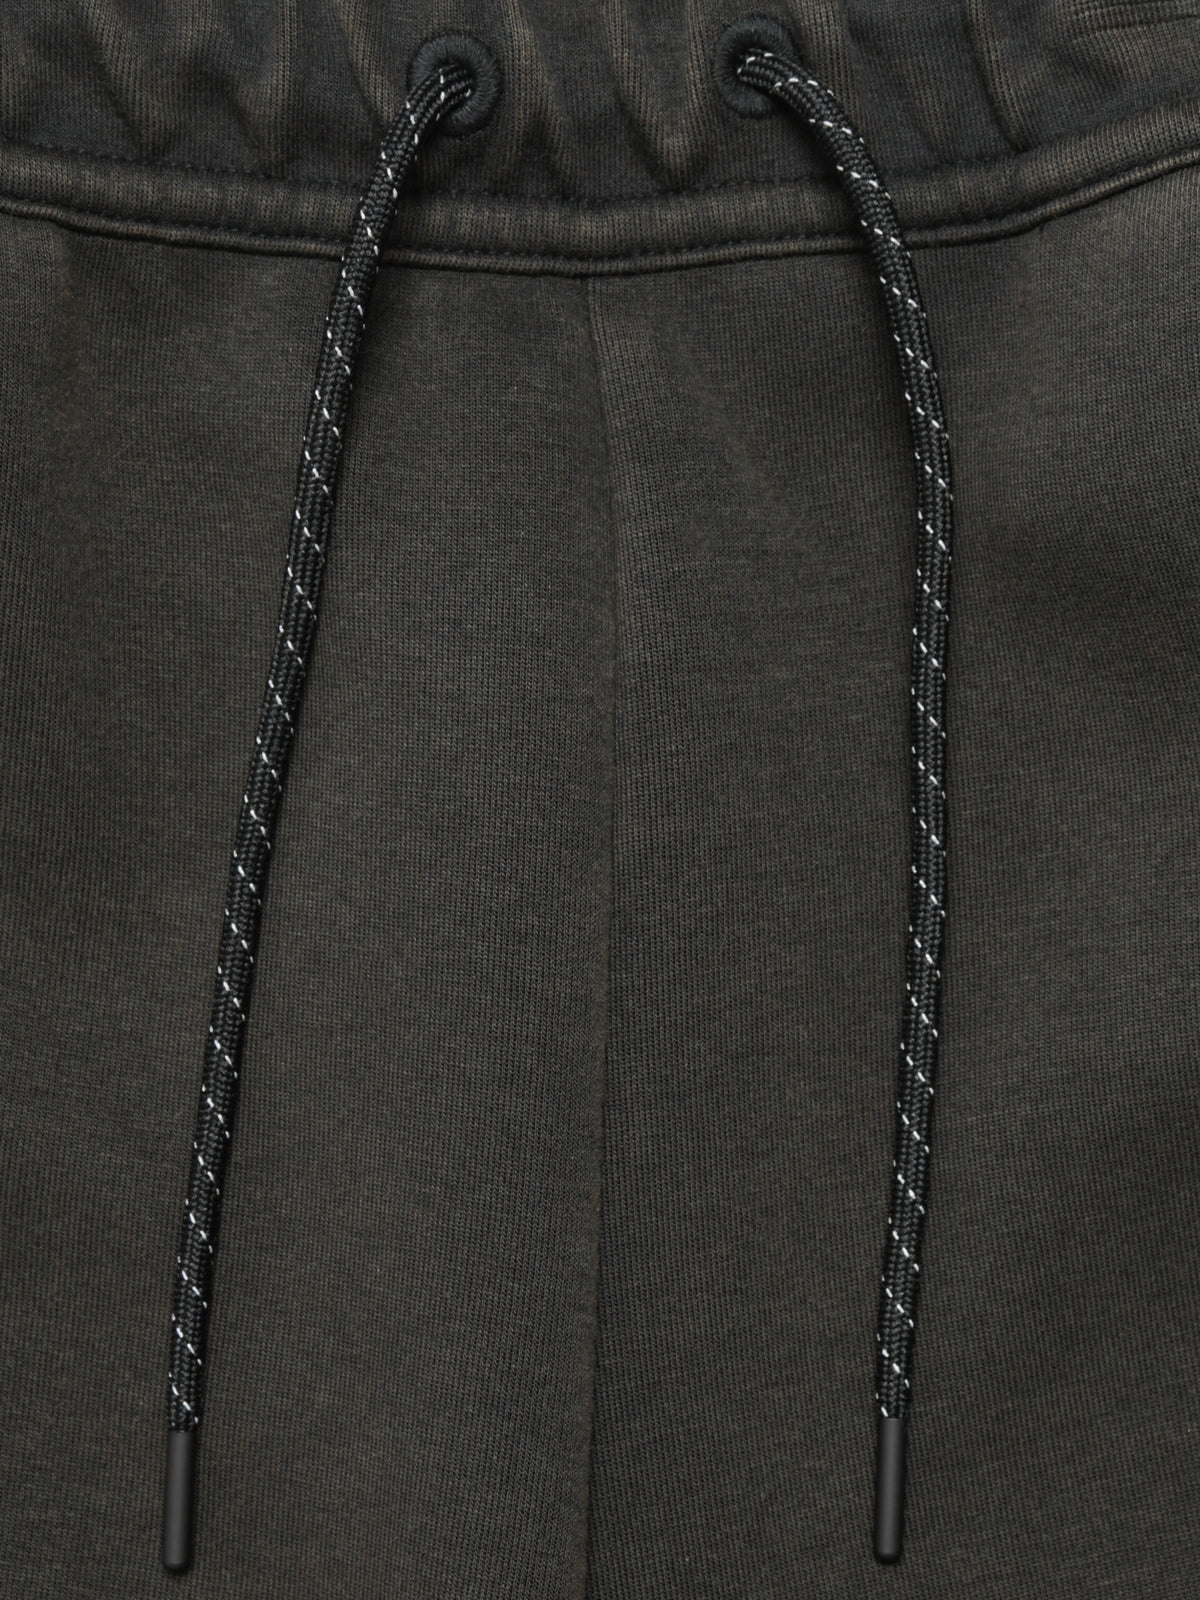 Sportswear Tech Fleece Jogger in Washed Black